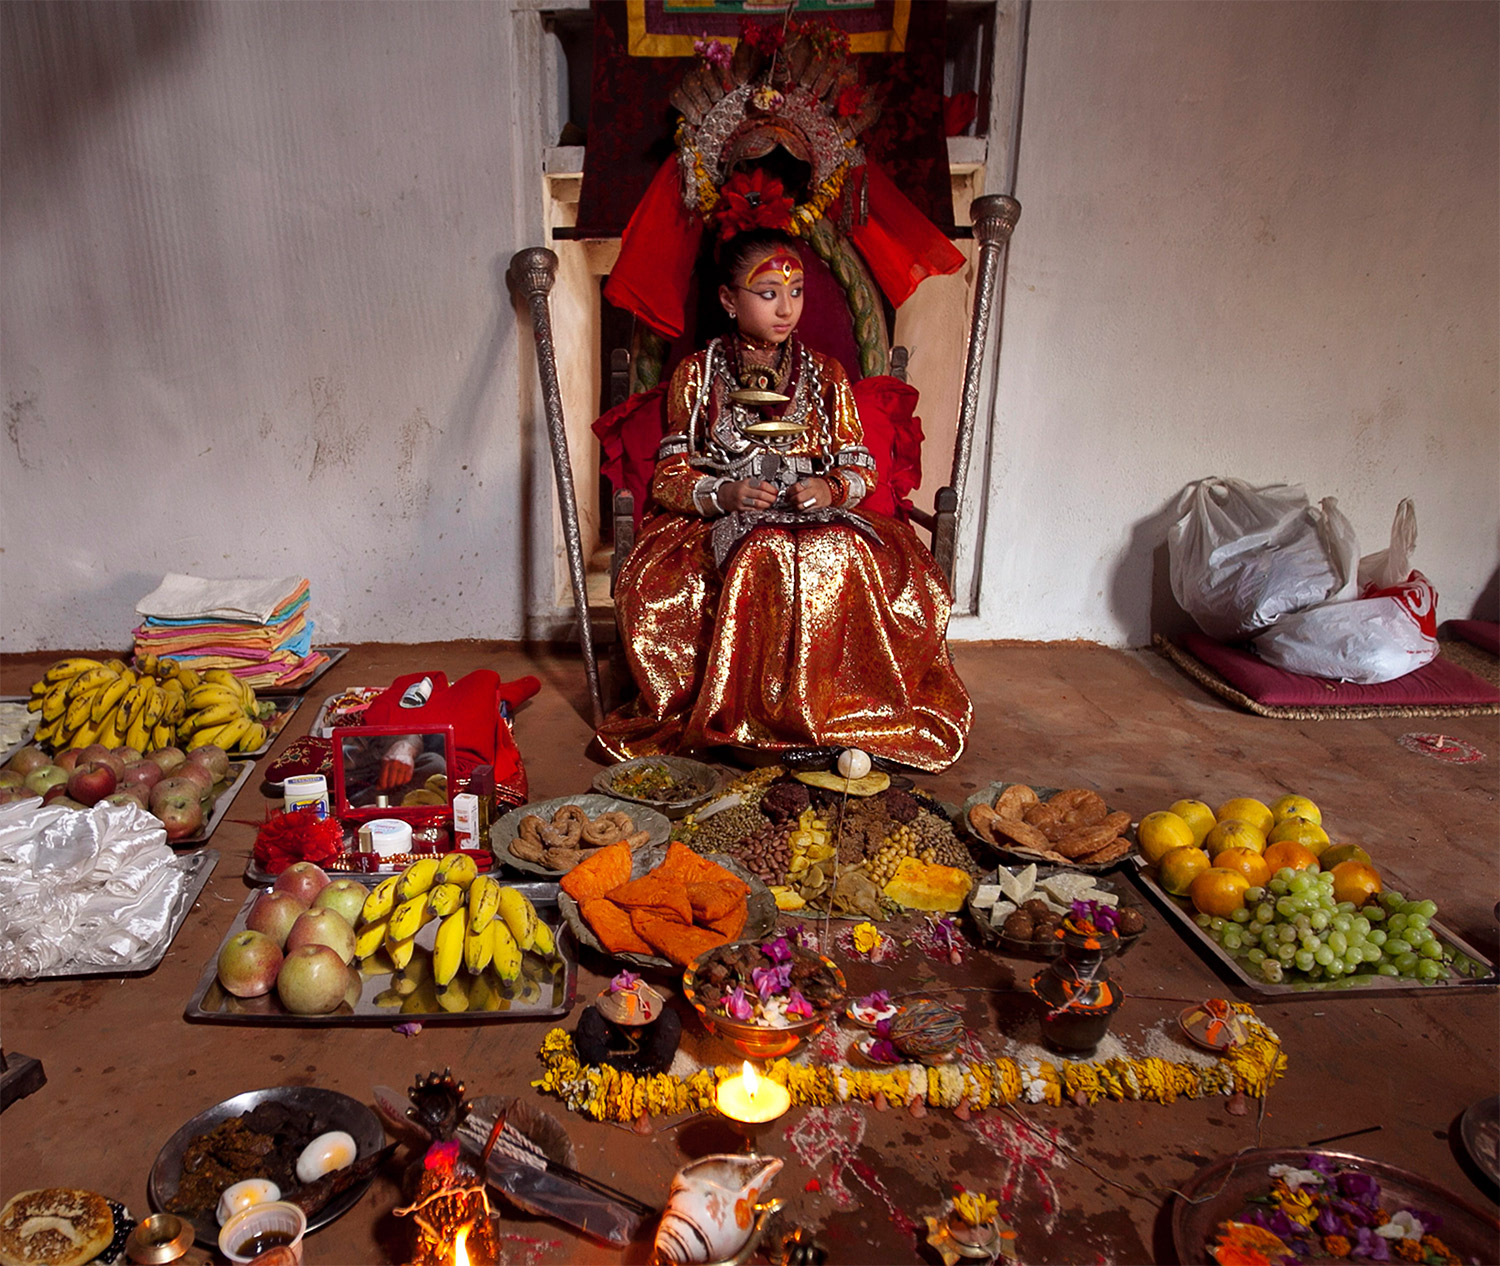 The Kumari Samita Bajracharya with offerings from worshippers, Patan, Nepal, 2011. Narendra Shrestha / EPA / Corbis Images